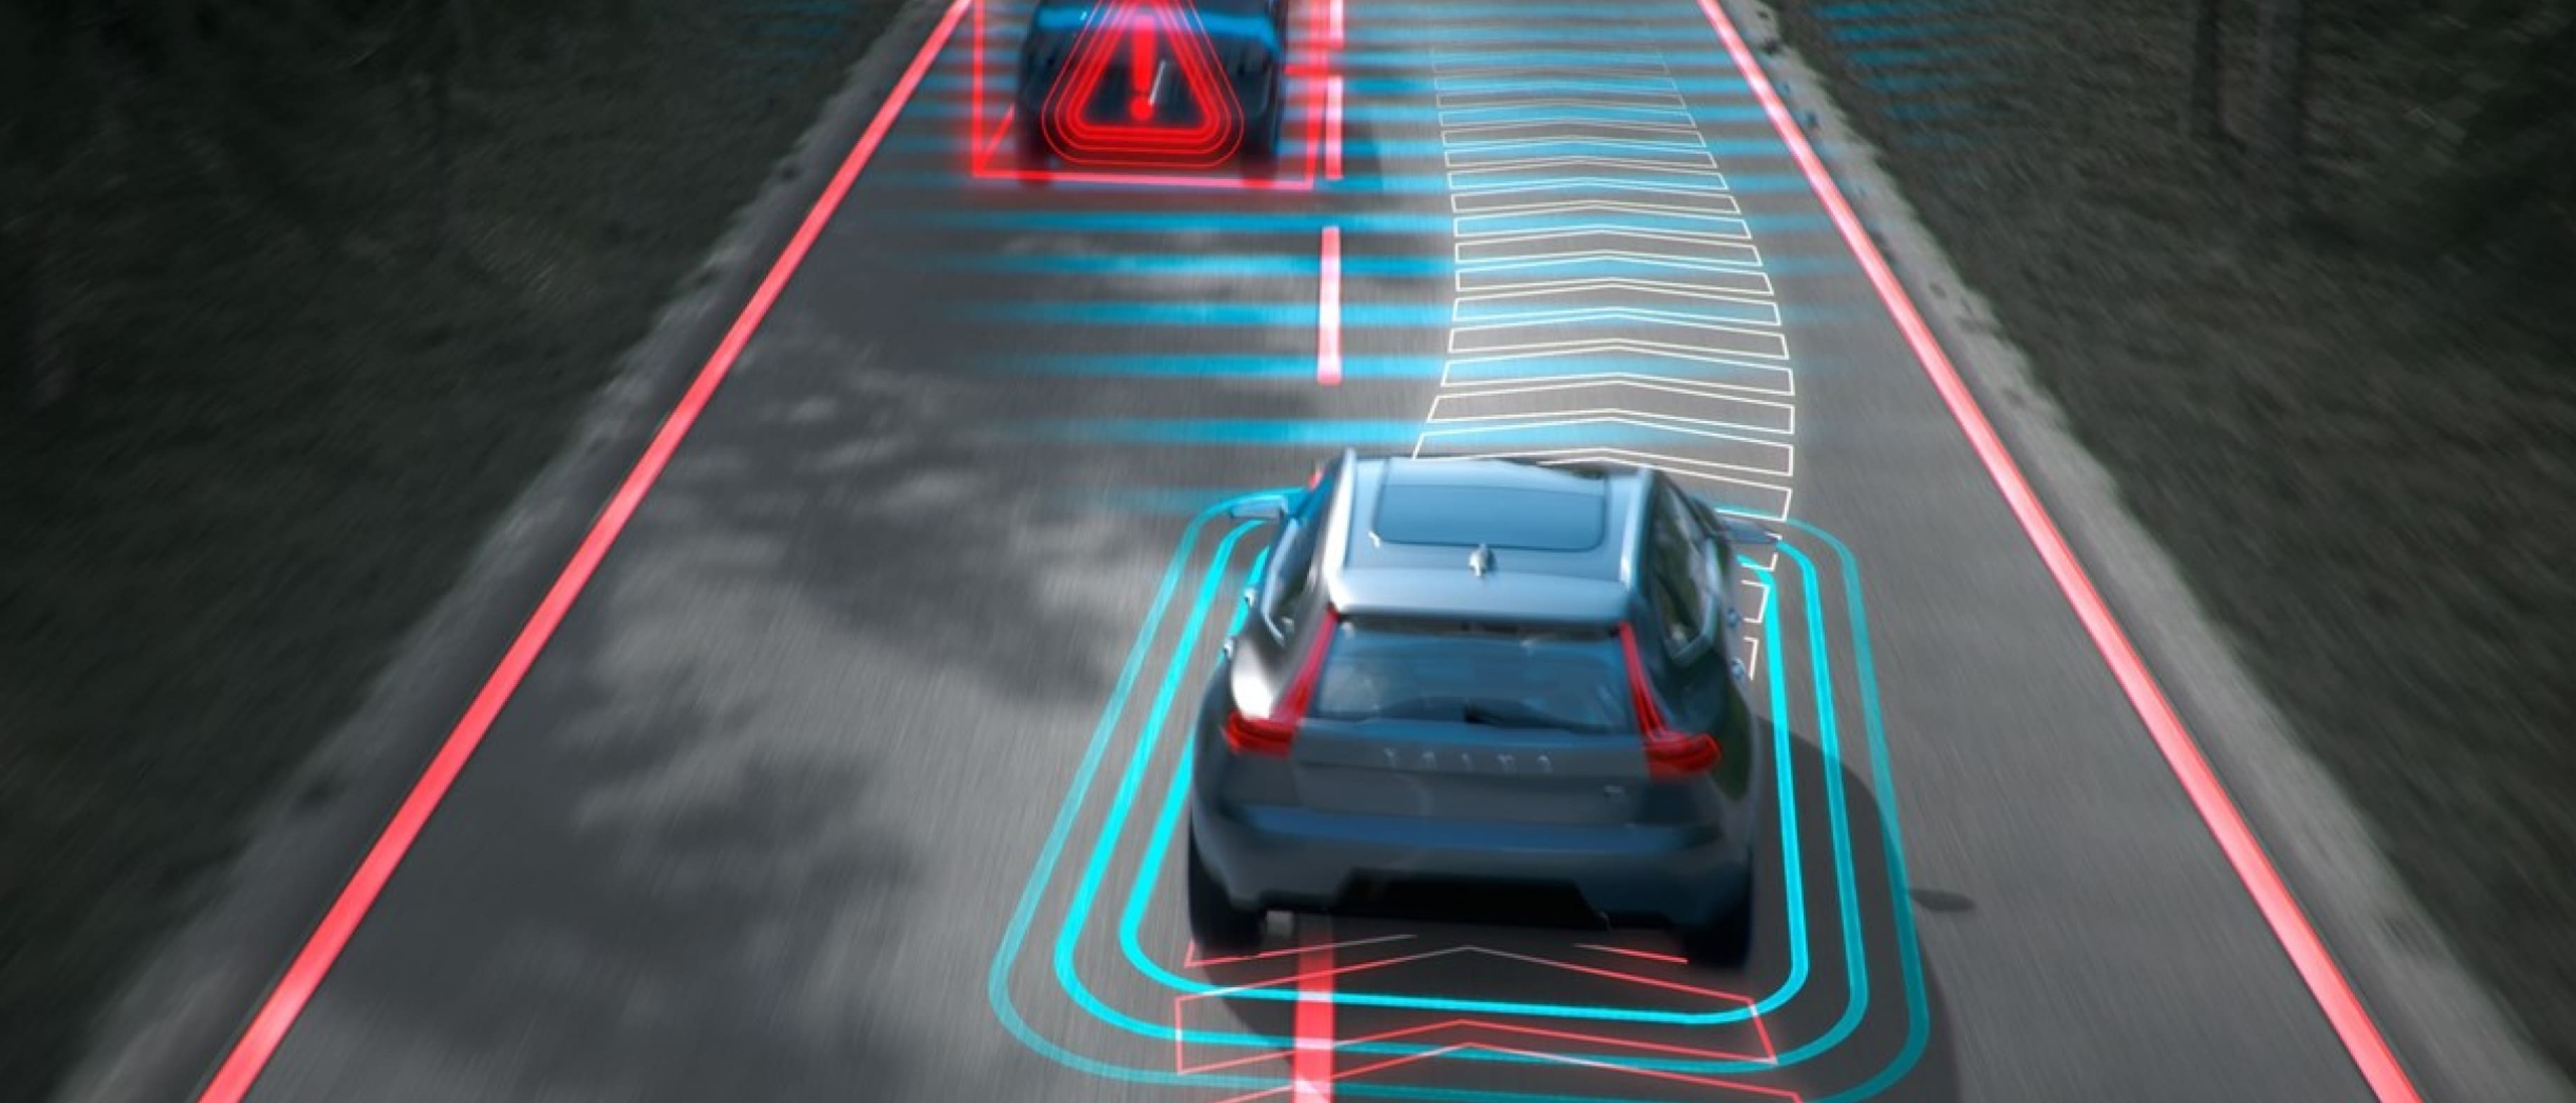 Un vehículo Volvo circula por una autopista urbanizada con señales digitales que indican que hay que frenar en sentido contrario.